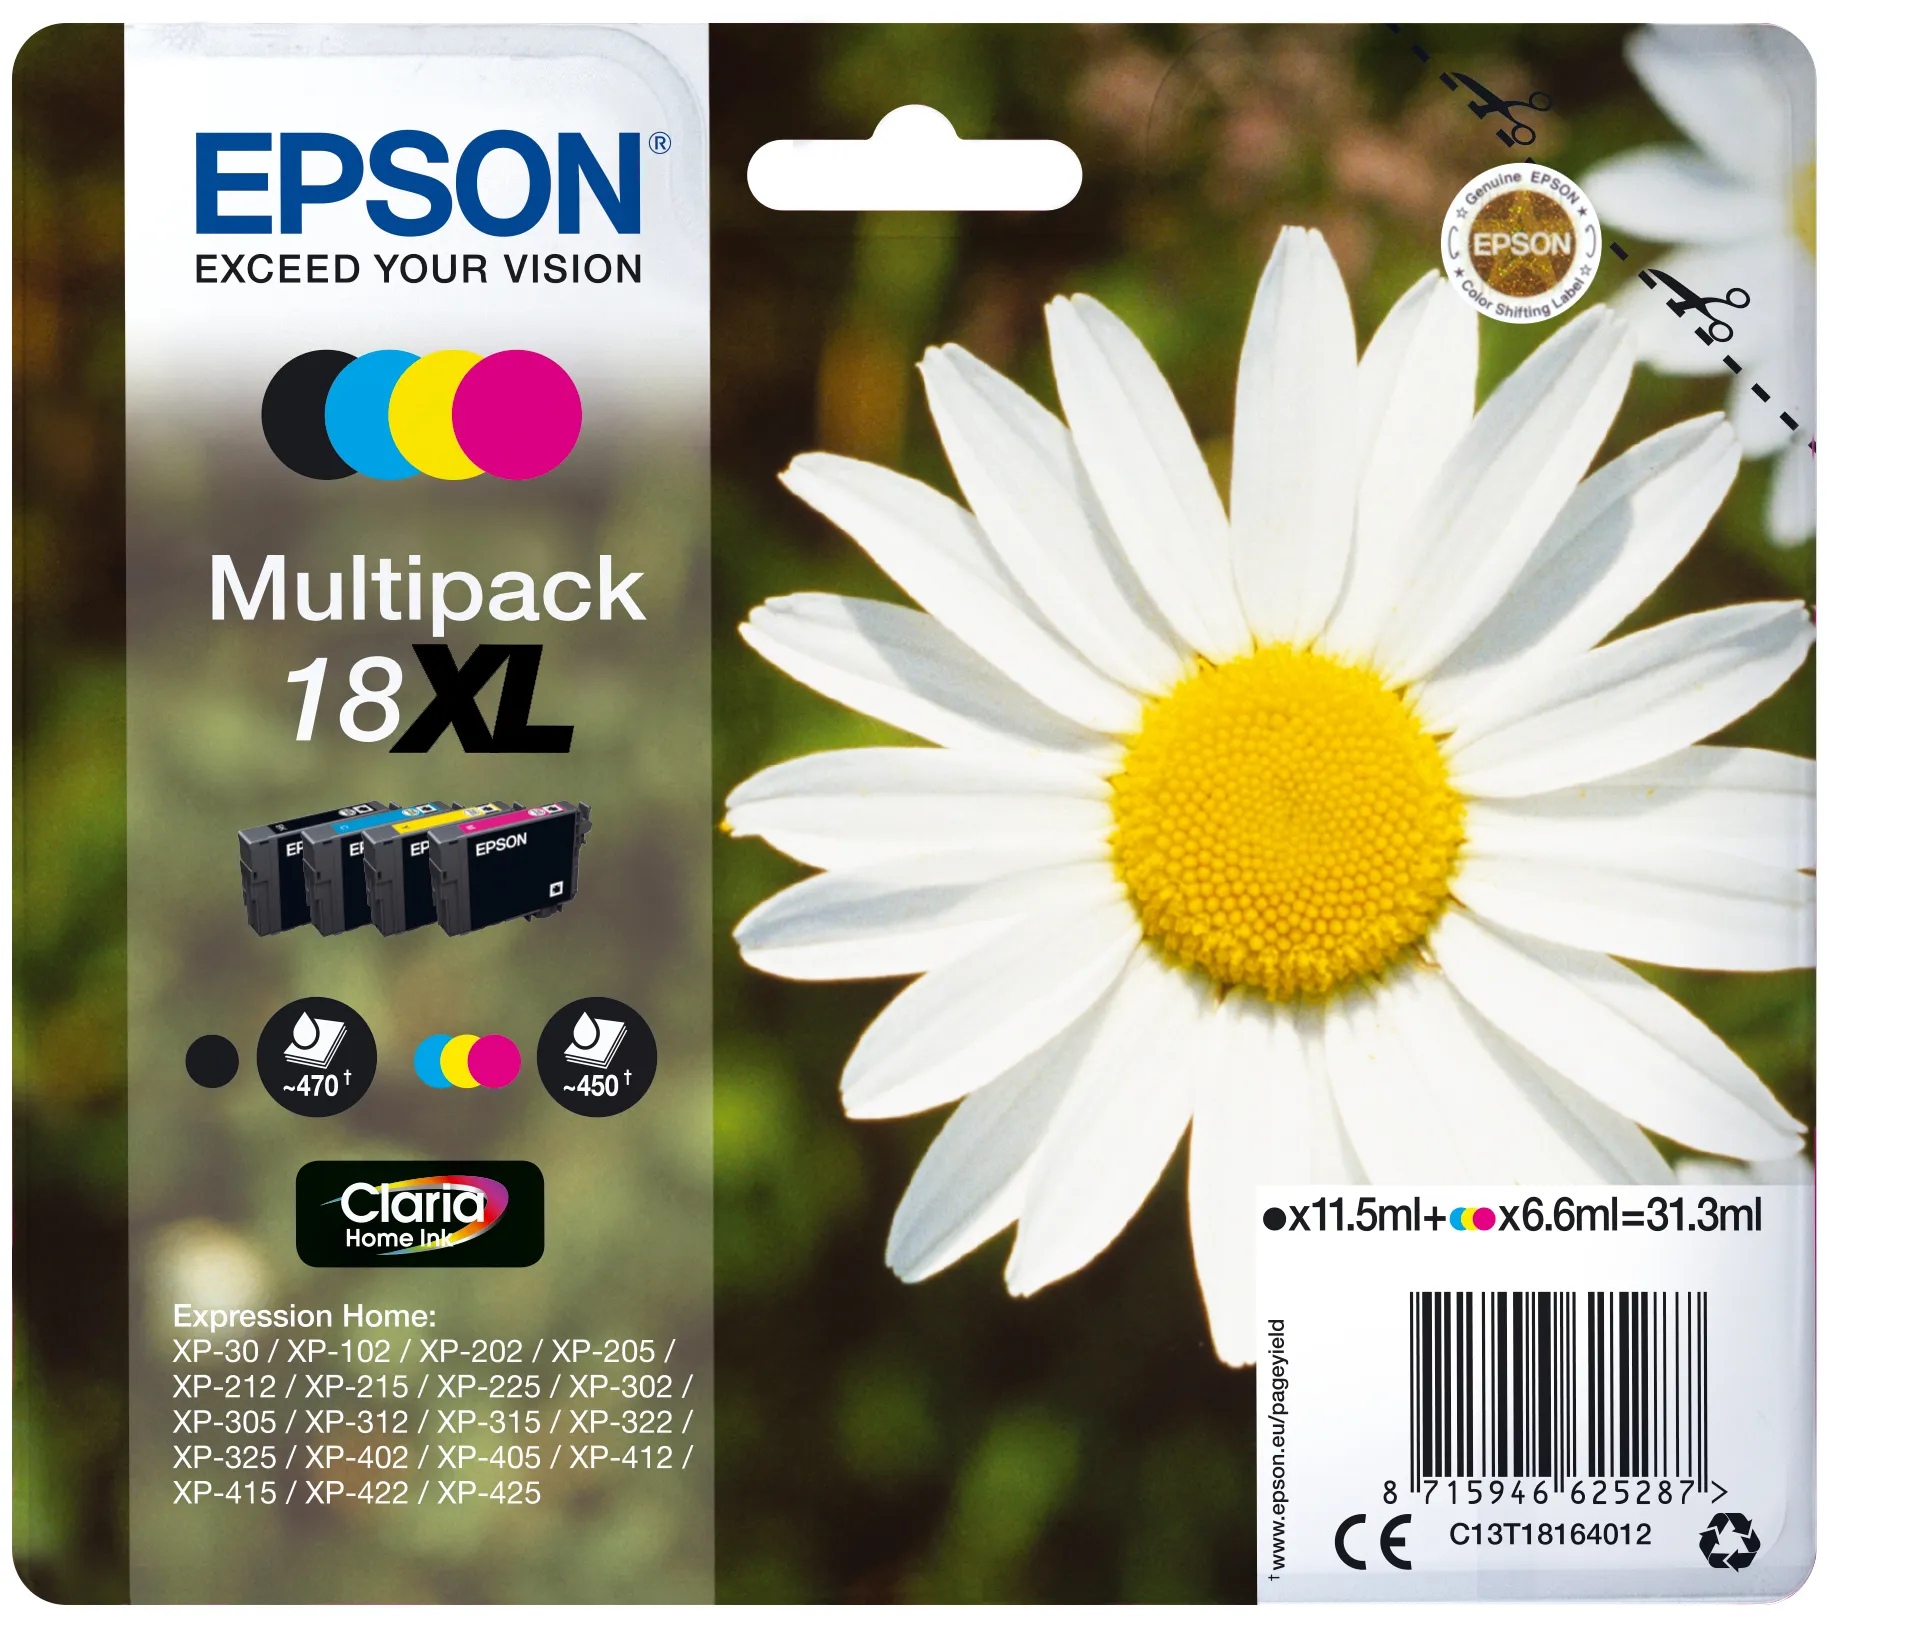 Achat EPSON 18XL cartouche encre noir et tricolore haute sur hello RSE - visuel 3